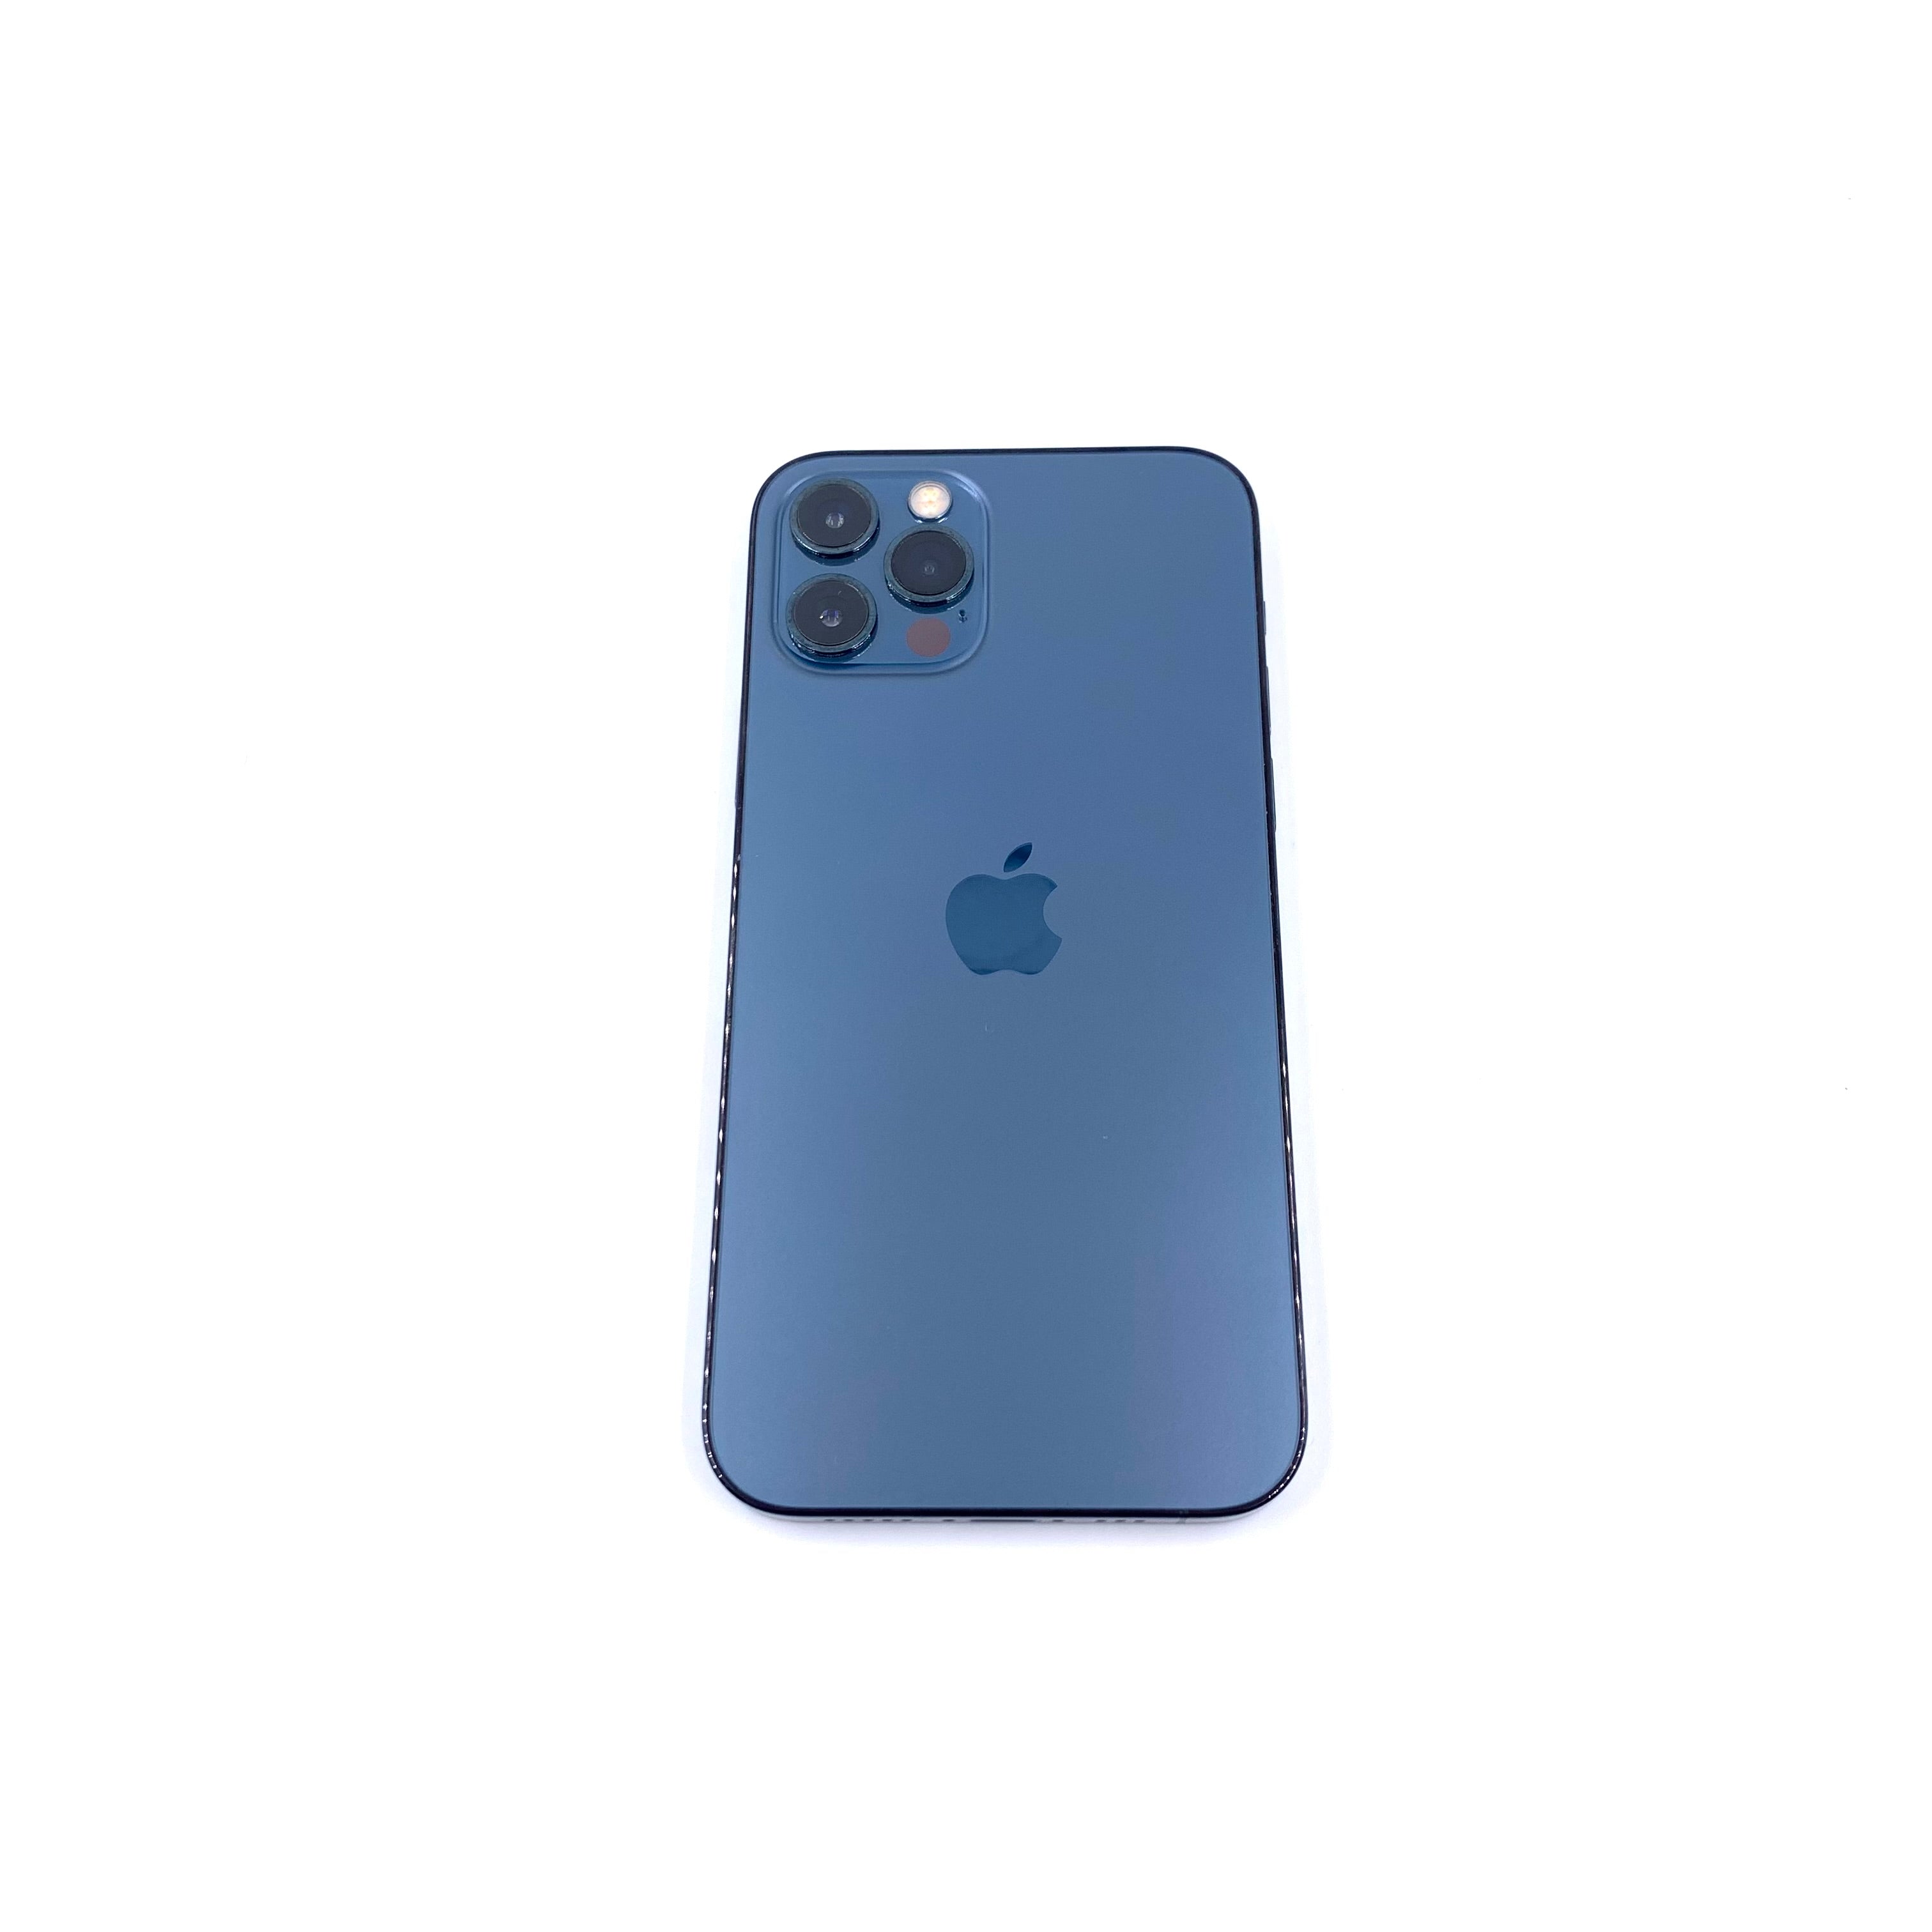 Apple iPhone 12 Pro A234 (Reacondicionado) – Tienda Dondé